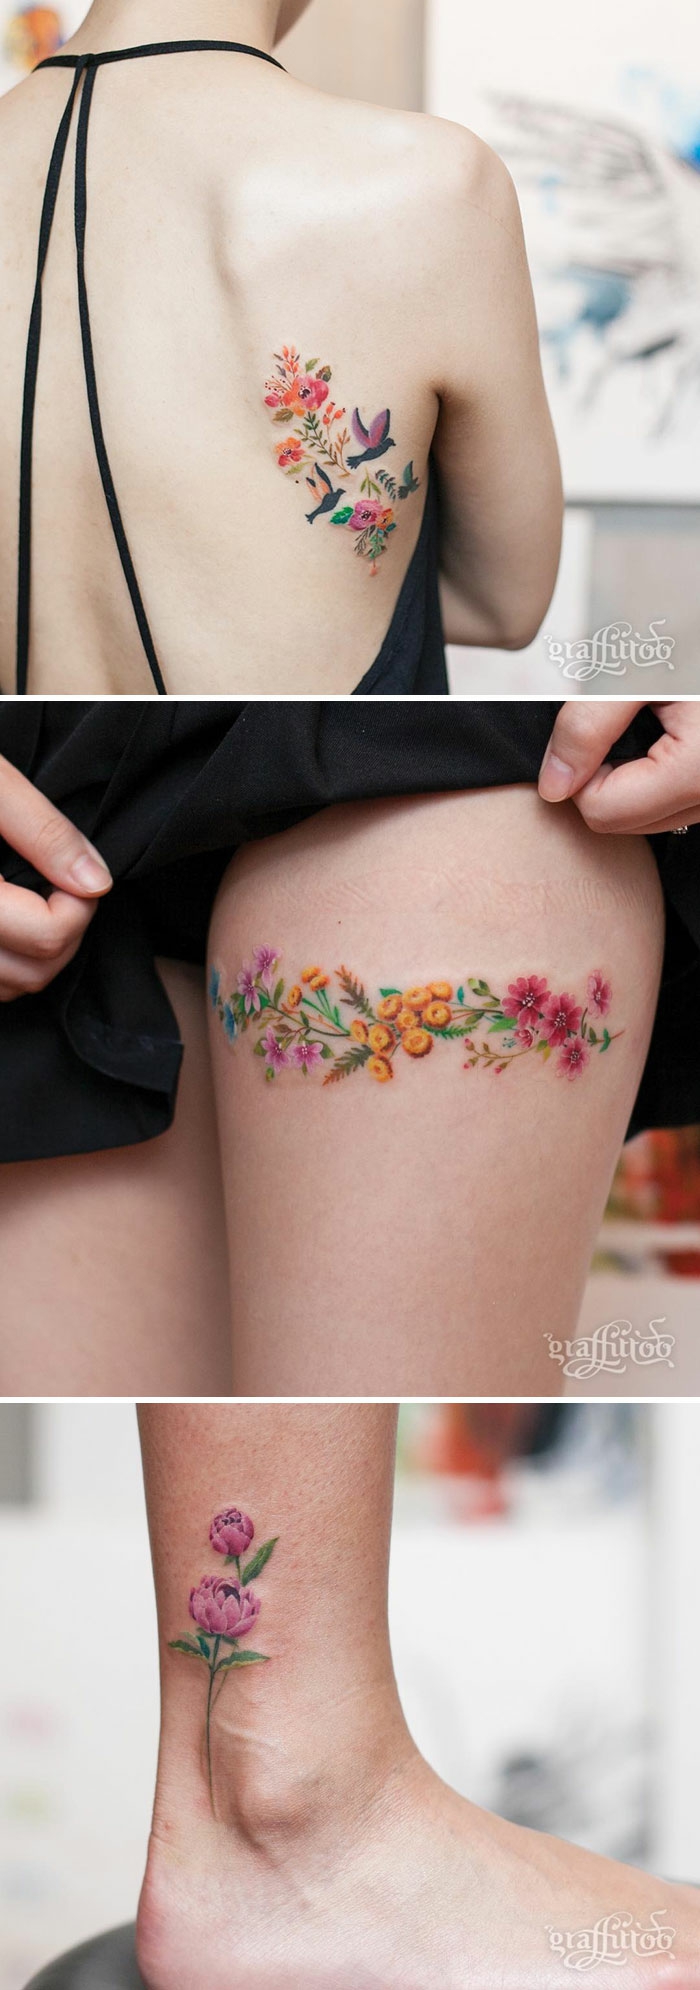 Idee de tatouage femme tatoo de femme petit tatoo discret